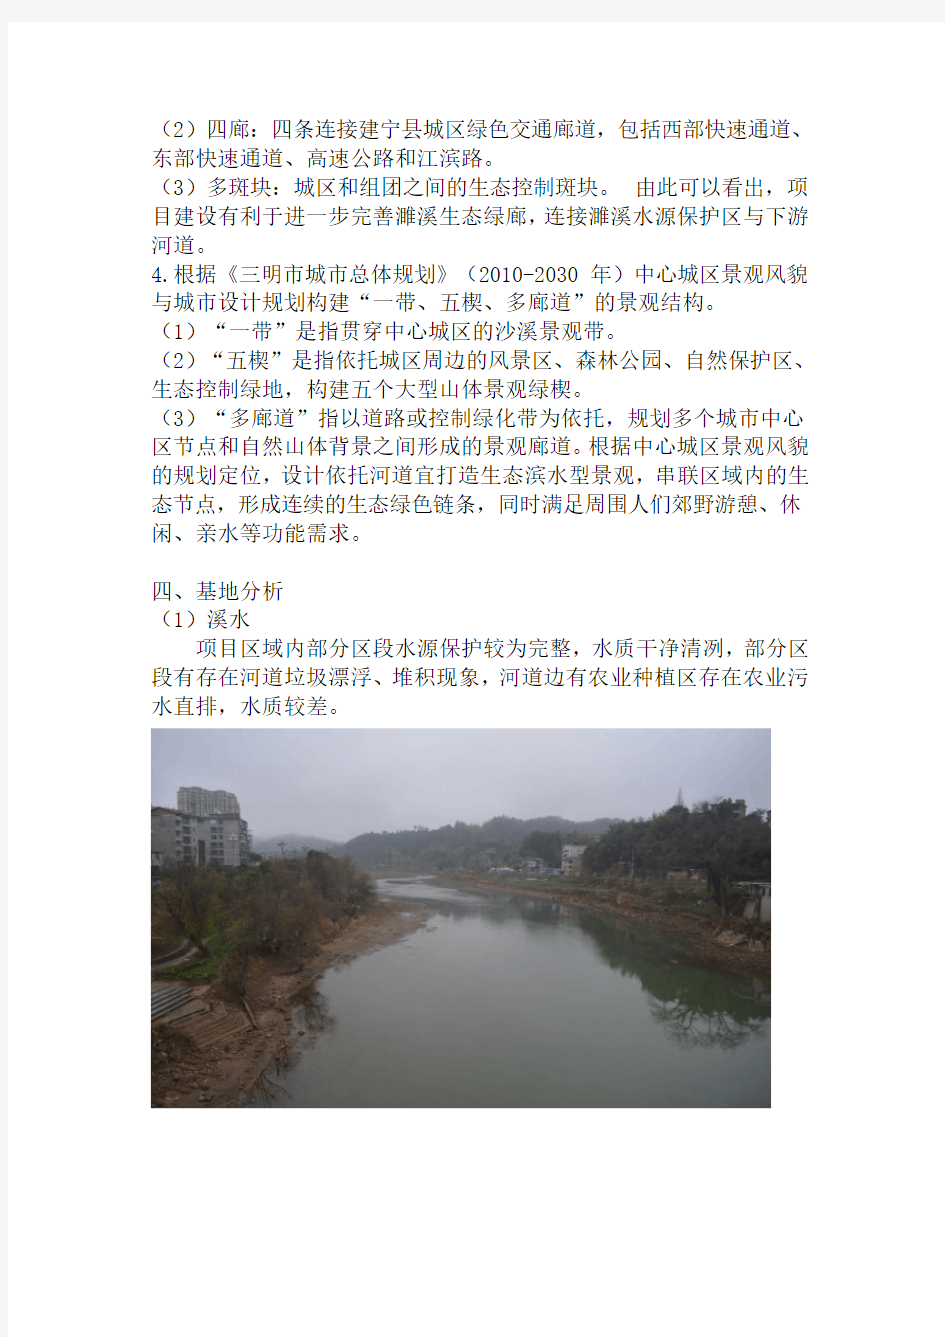 建宁县濉溪河岸生态修复与改造项目实施方案